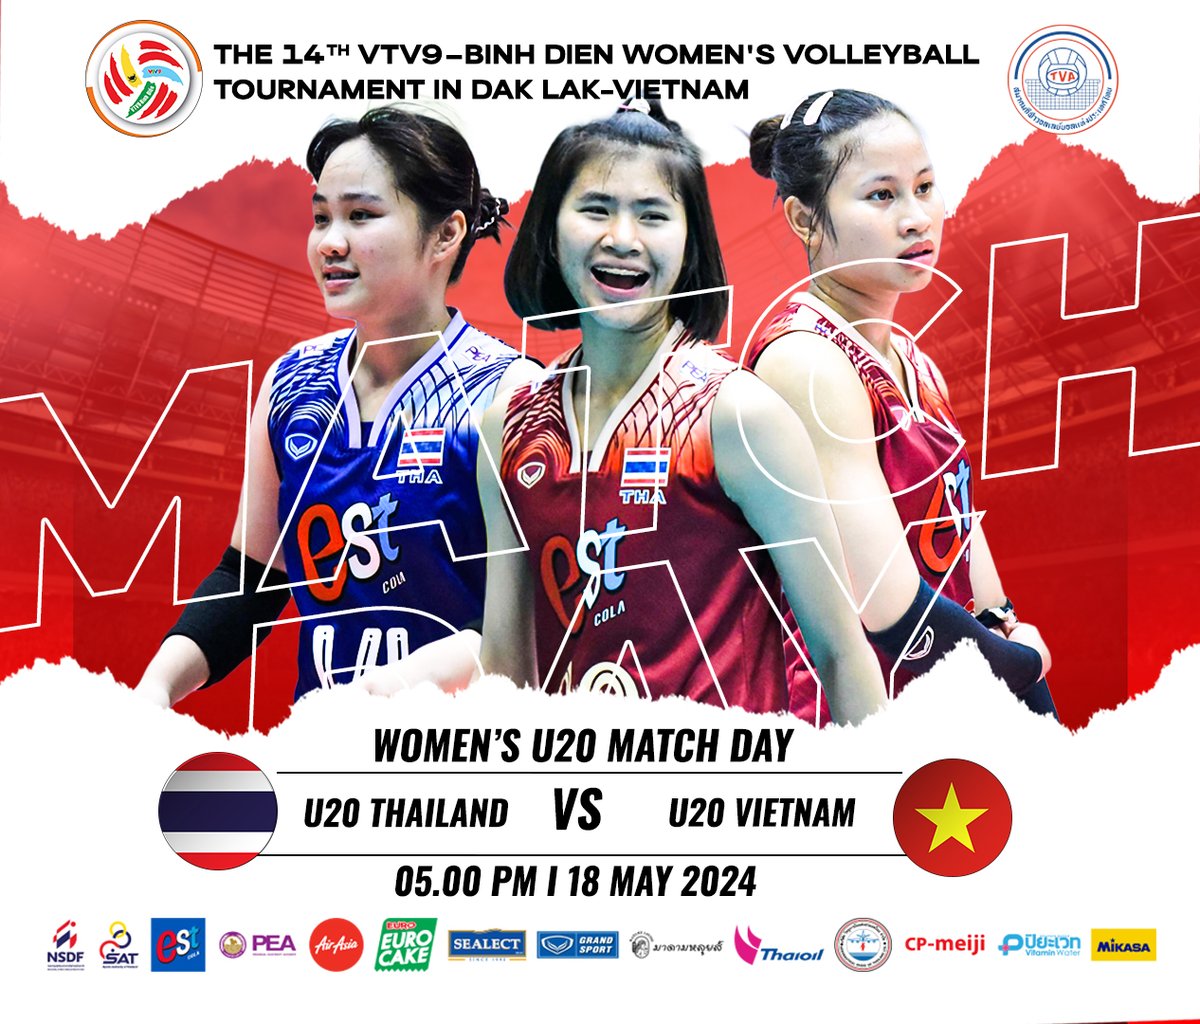 โปรแกรมการแข่งขัน The 14th VTV9–BINH DIEN Women's Volleyball Tournament in DAK LAK-Vietnam วันที่ 18 พฤษภาคม 2567 เวลา 17.00 น. ชิงอันดับ 7 ทีมชาติไทย ยู-20 พบ ทีมชาติเวียดนาม ยู-20